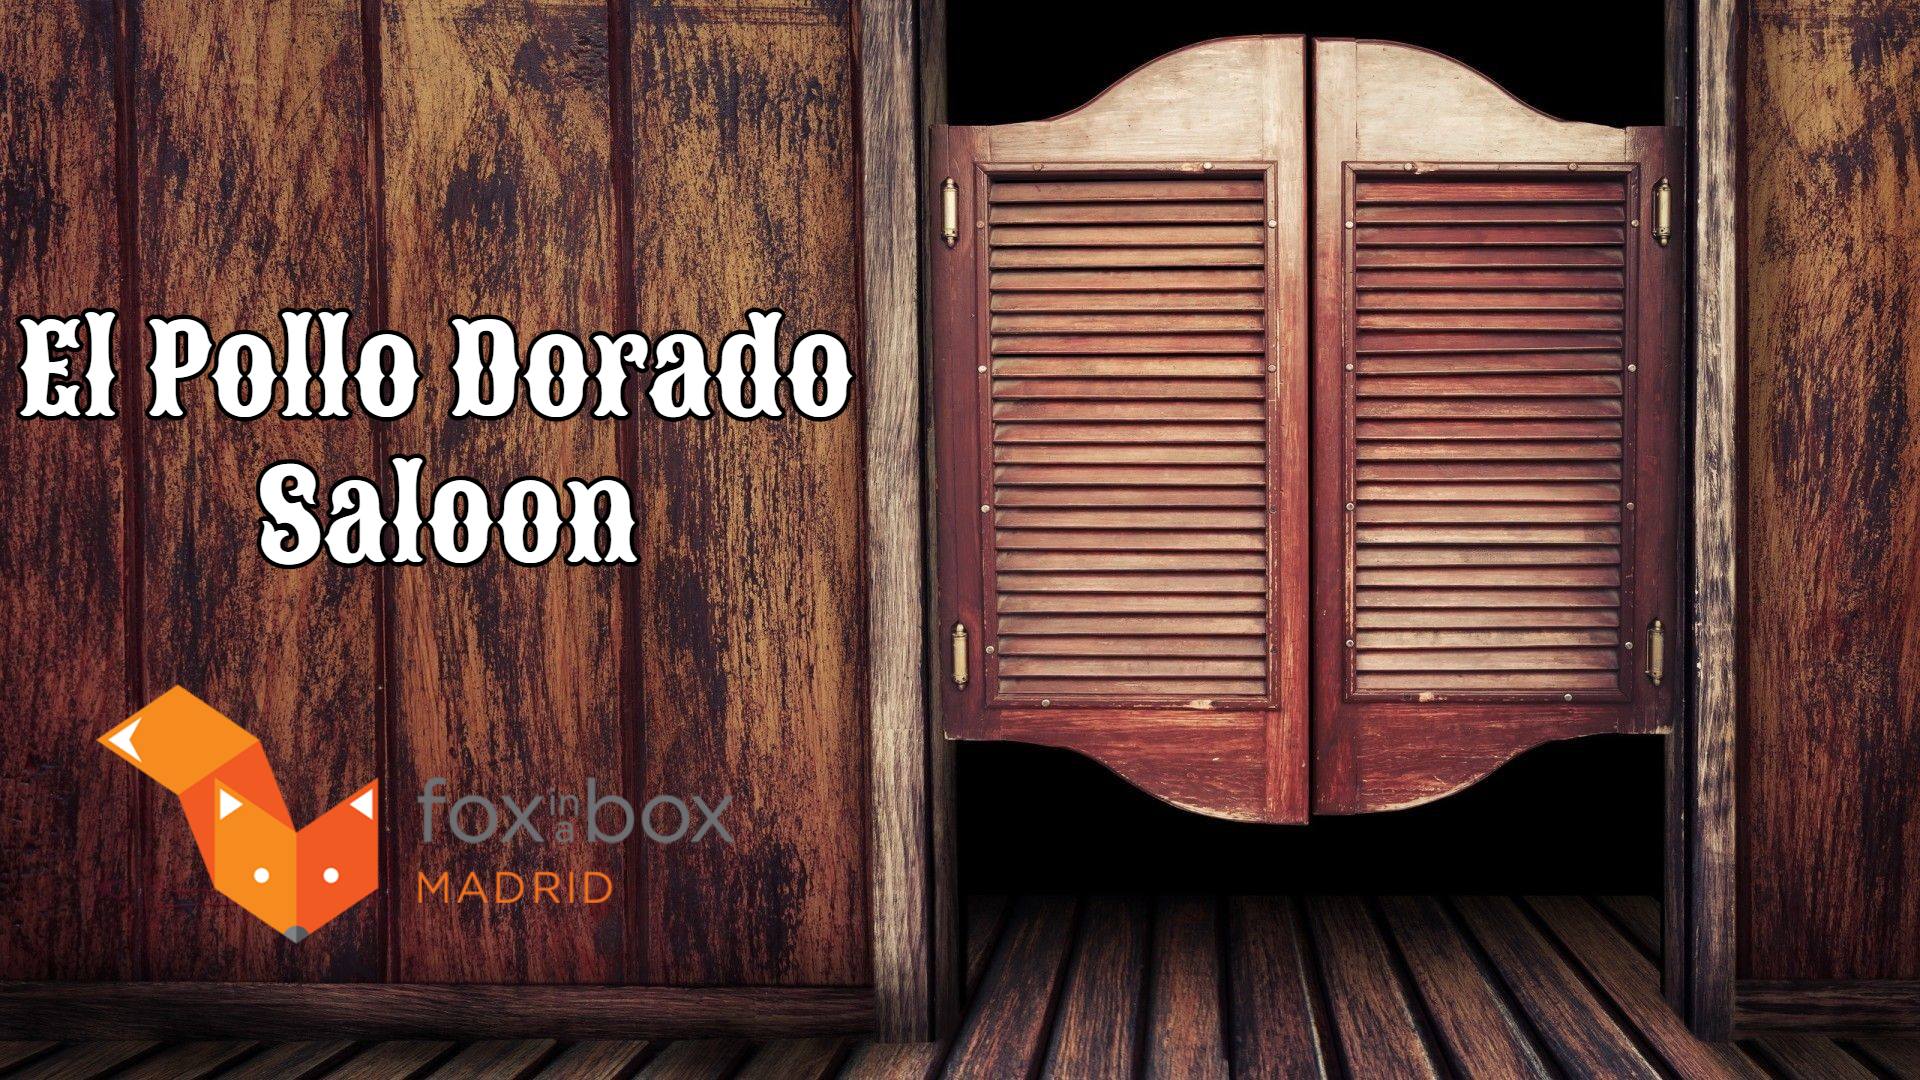 El Pollo Dorado Saloon - Fox in a Box, Madrid - Review Escape Room